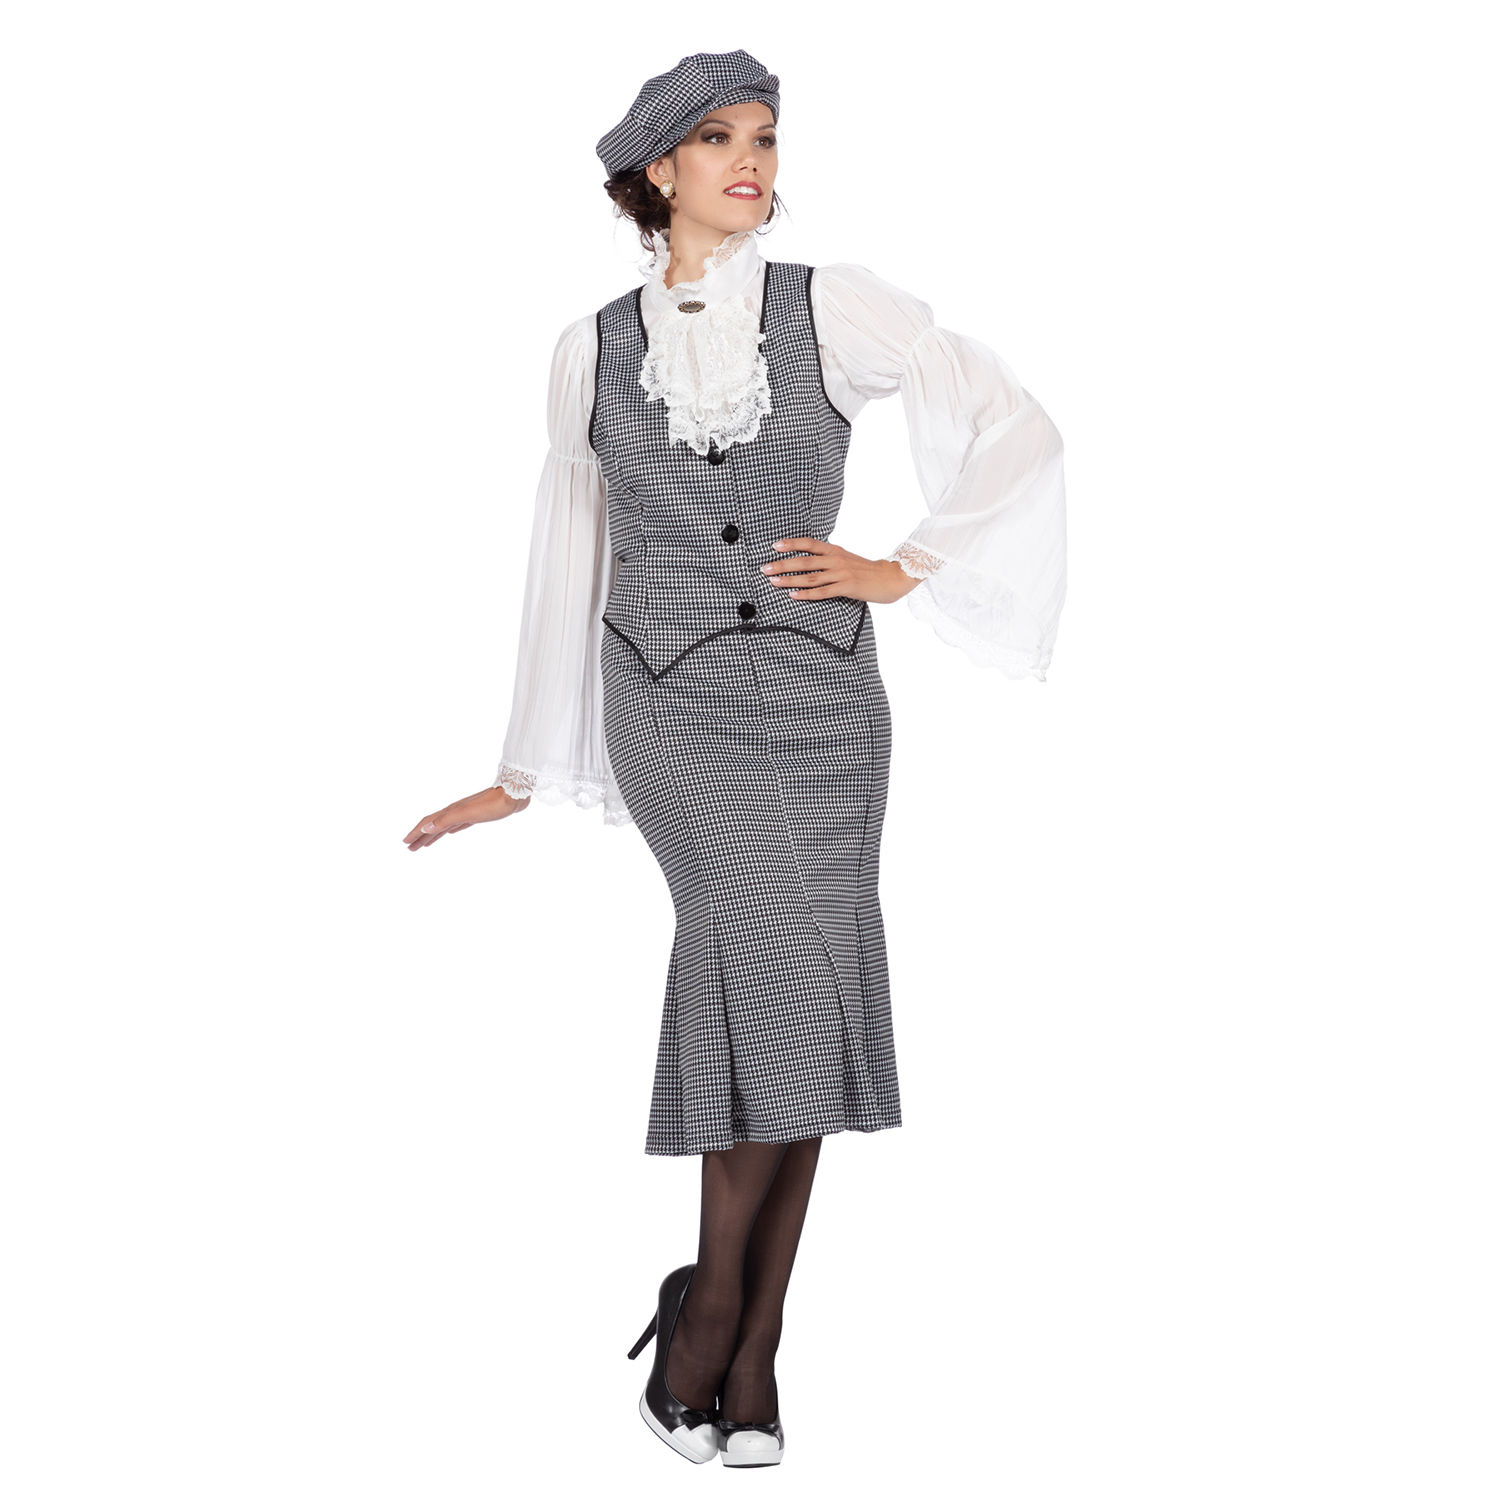 Damen-Kostüm 20er Jahre Polly, 3-teilig mit Mütze, Weste & Rock, Gr. 40